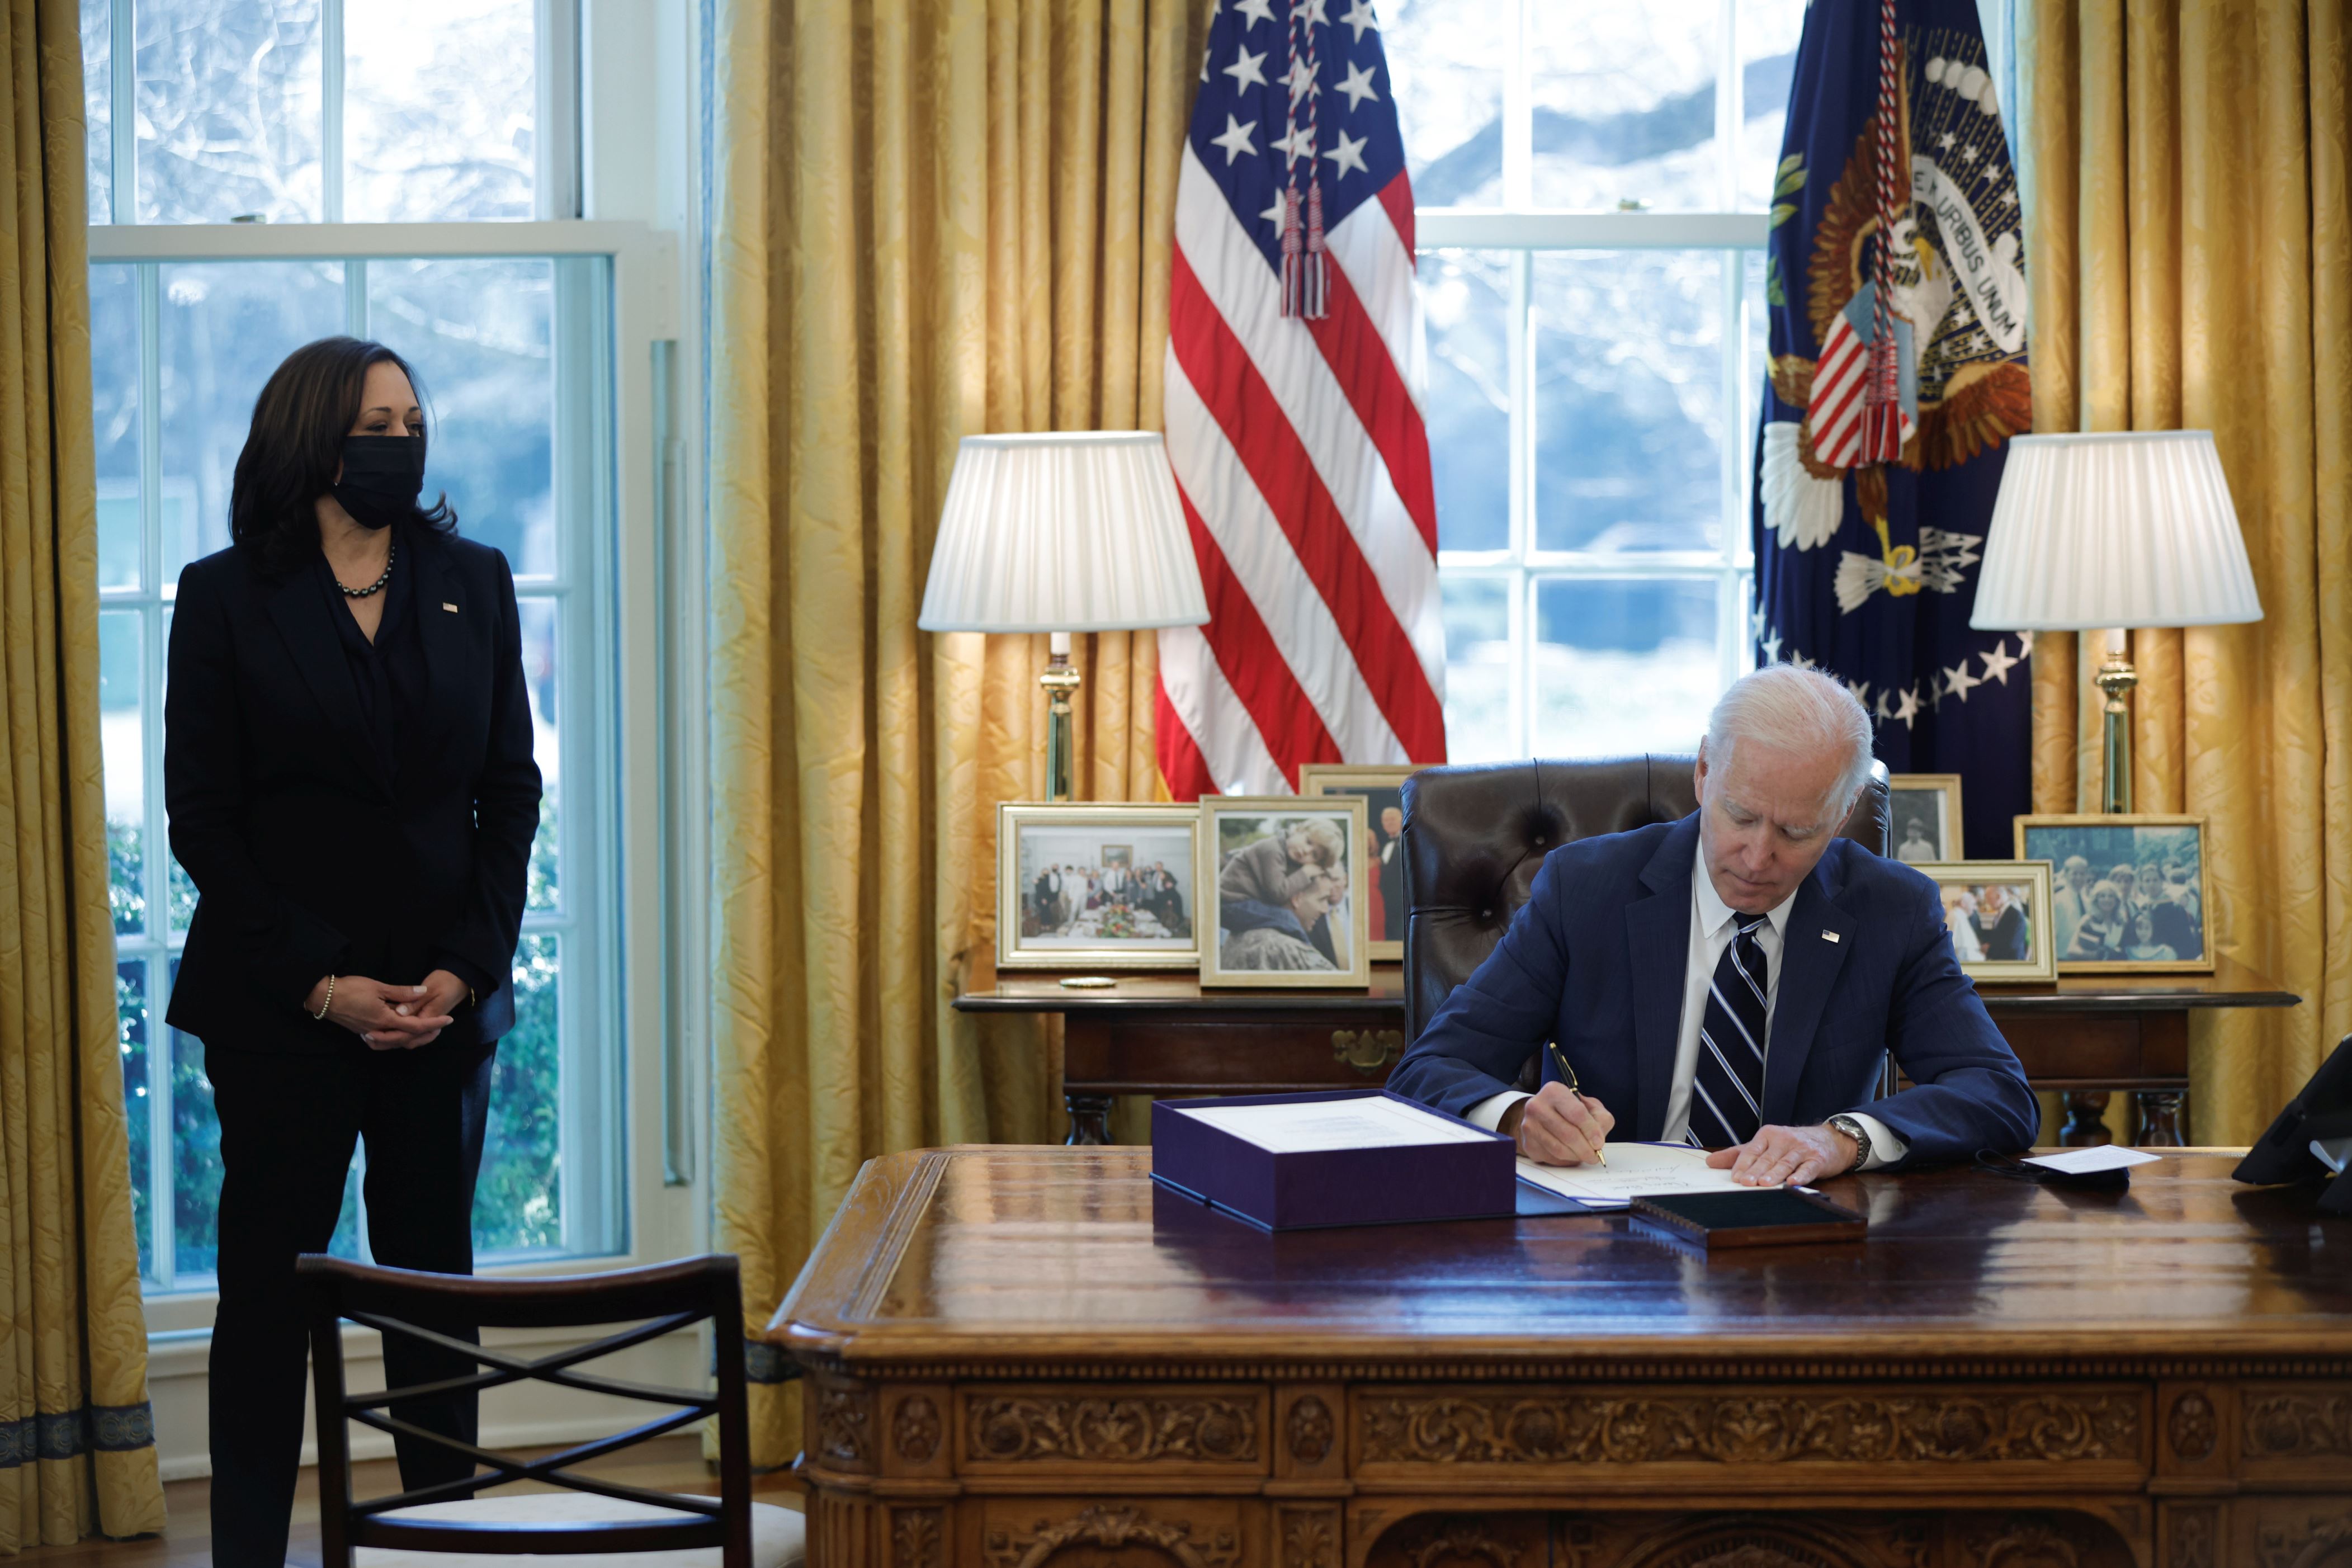 美国总统乔·拜登（Joe Biden）于2021年3月11日在美国华盛顿白宫椭圆形办公室内签署了《美国救援计划》，这是一整套经济救济措施，以应对冠状病毒病（COVID-19）大流行的影响。路透社/汤姆·布伦纳